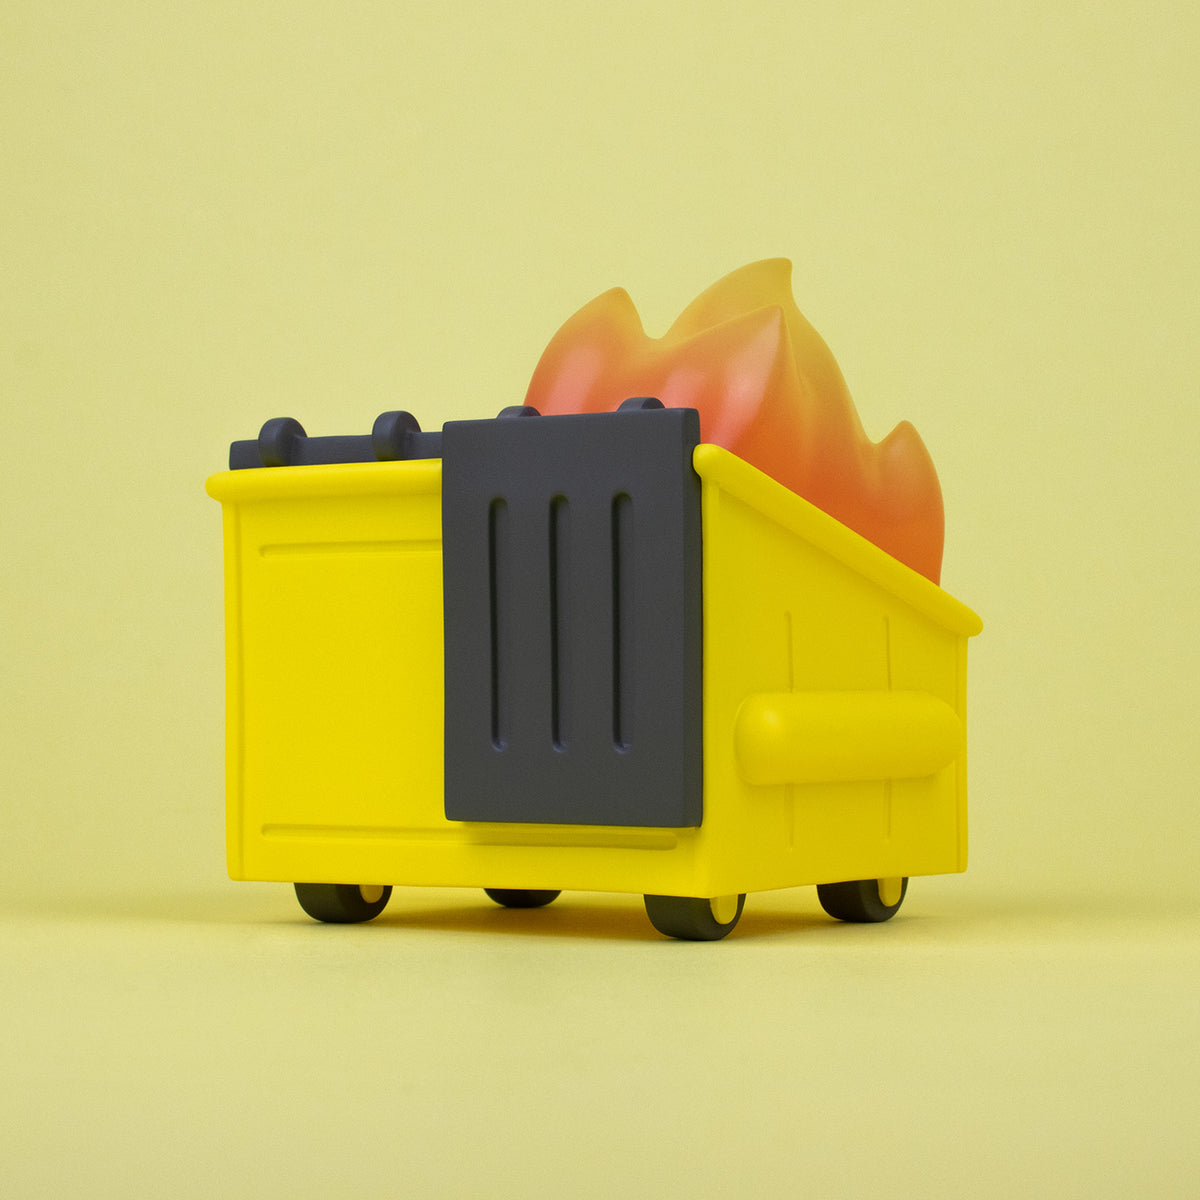 Dumpster Fire Vinyl Figure - Not so Mellow Yellow